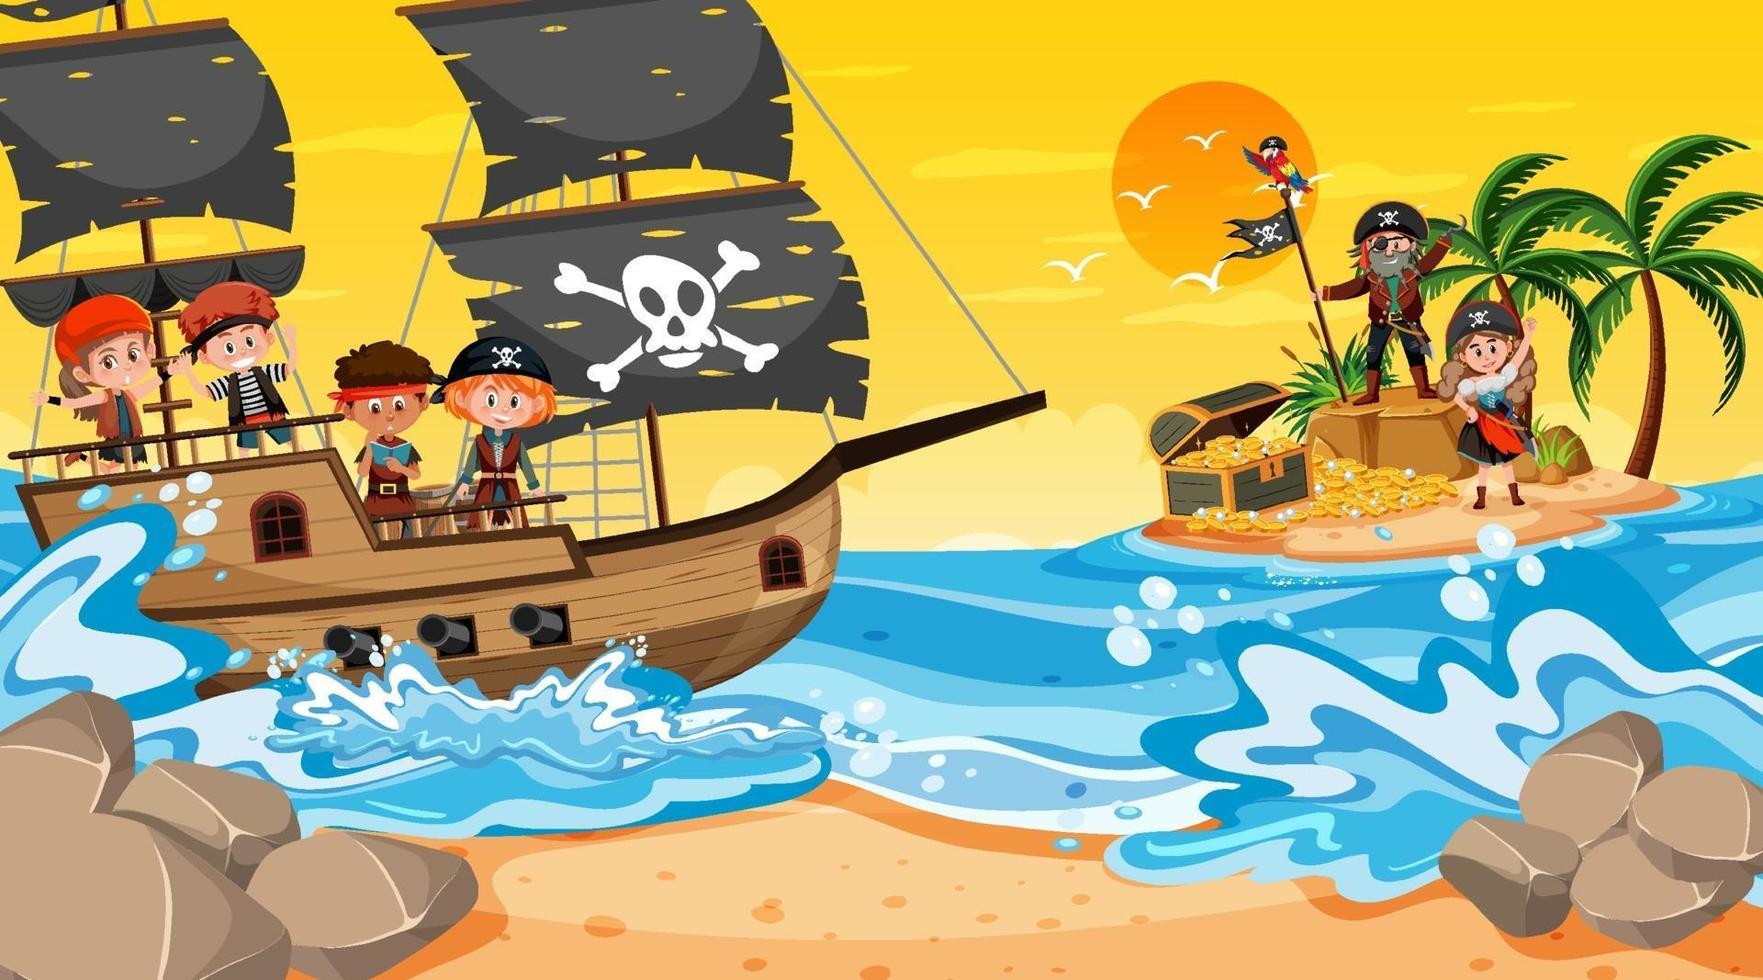 Schateilandscène bij zonsondergang met piratenkinderen op het schip vector